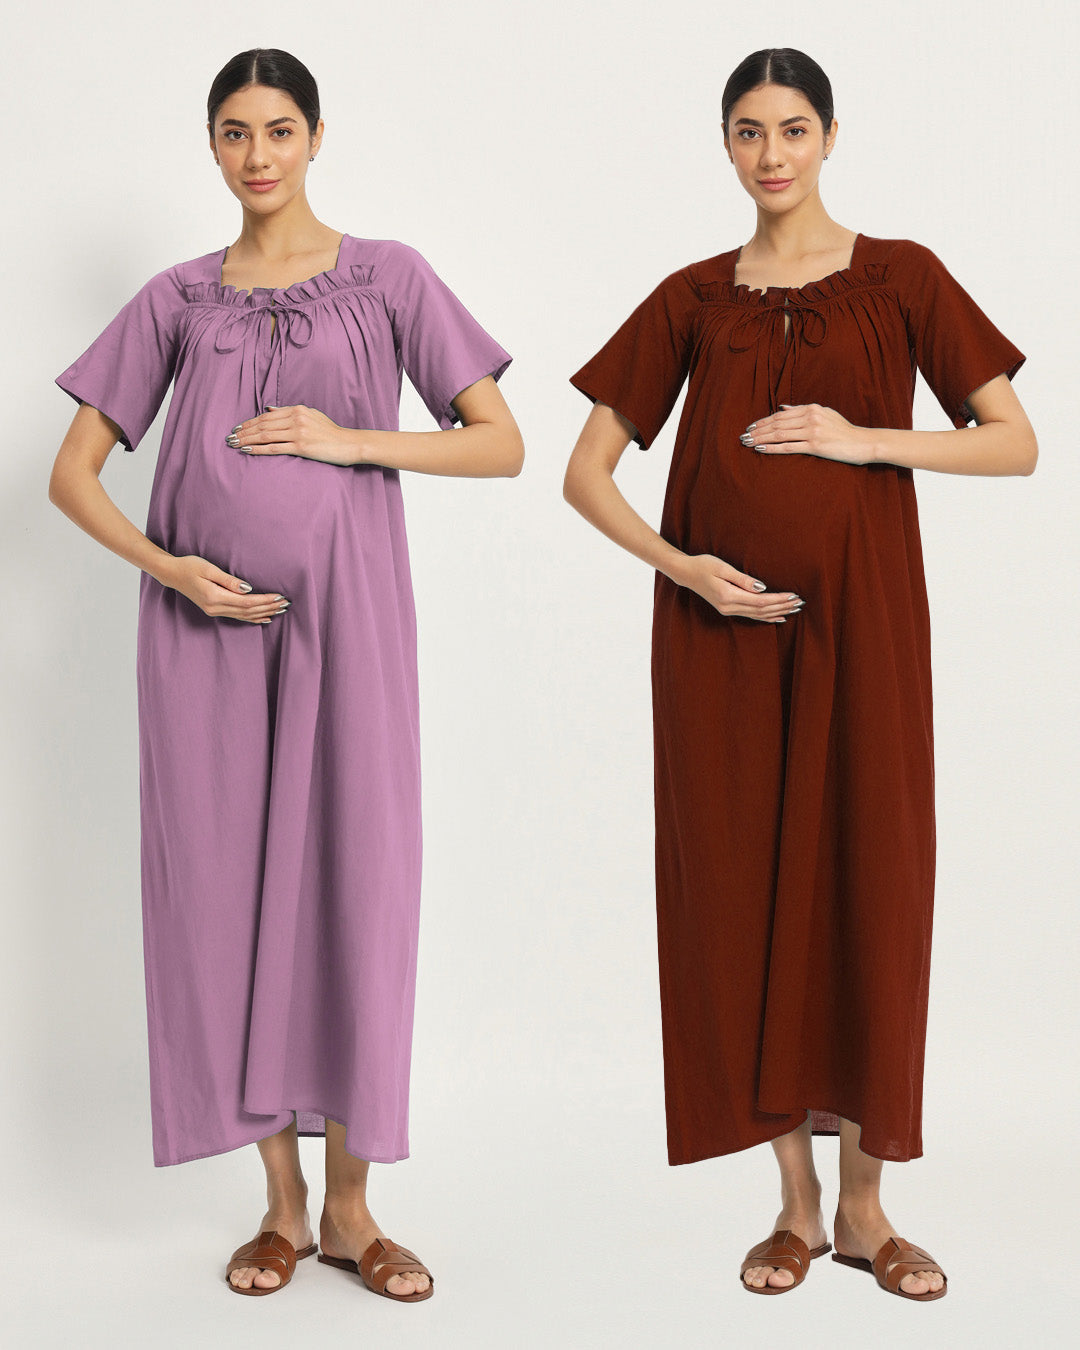 Combo: Iris Pink & Russet Red Nurture N' Shine Maternity & Nursing Dress